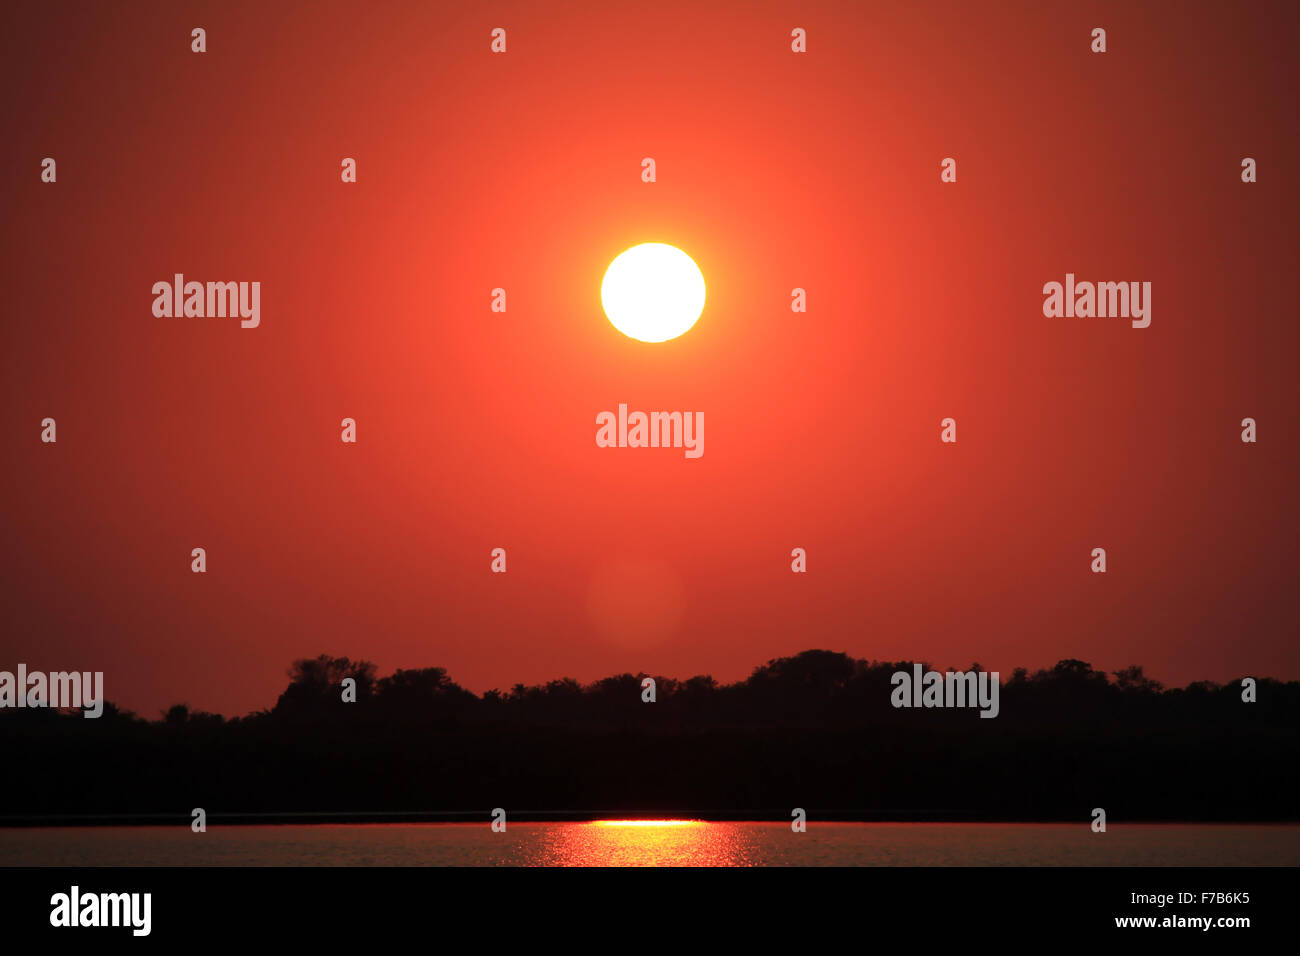 Guma fotografías e imágenes de alta resolución - Alamy